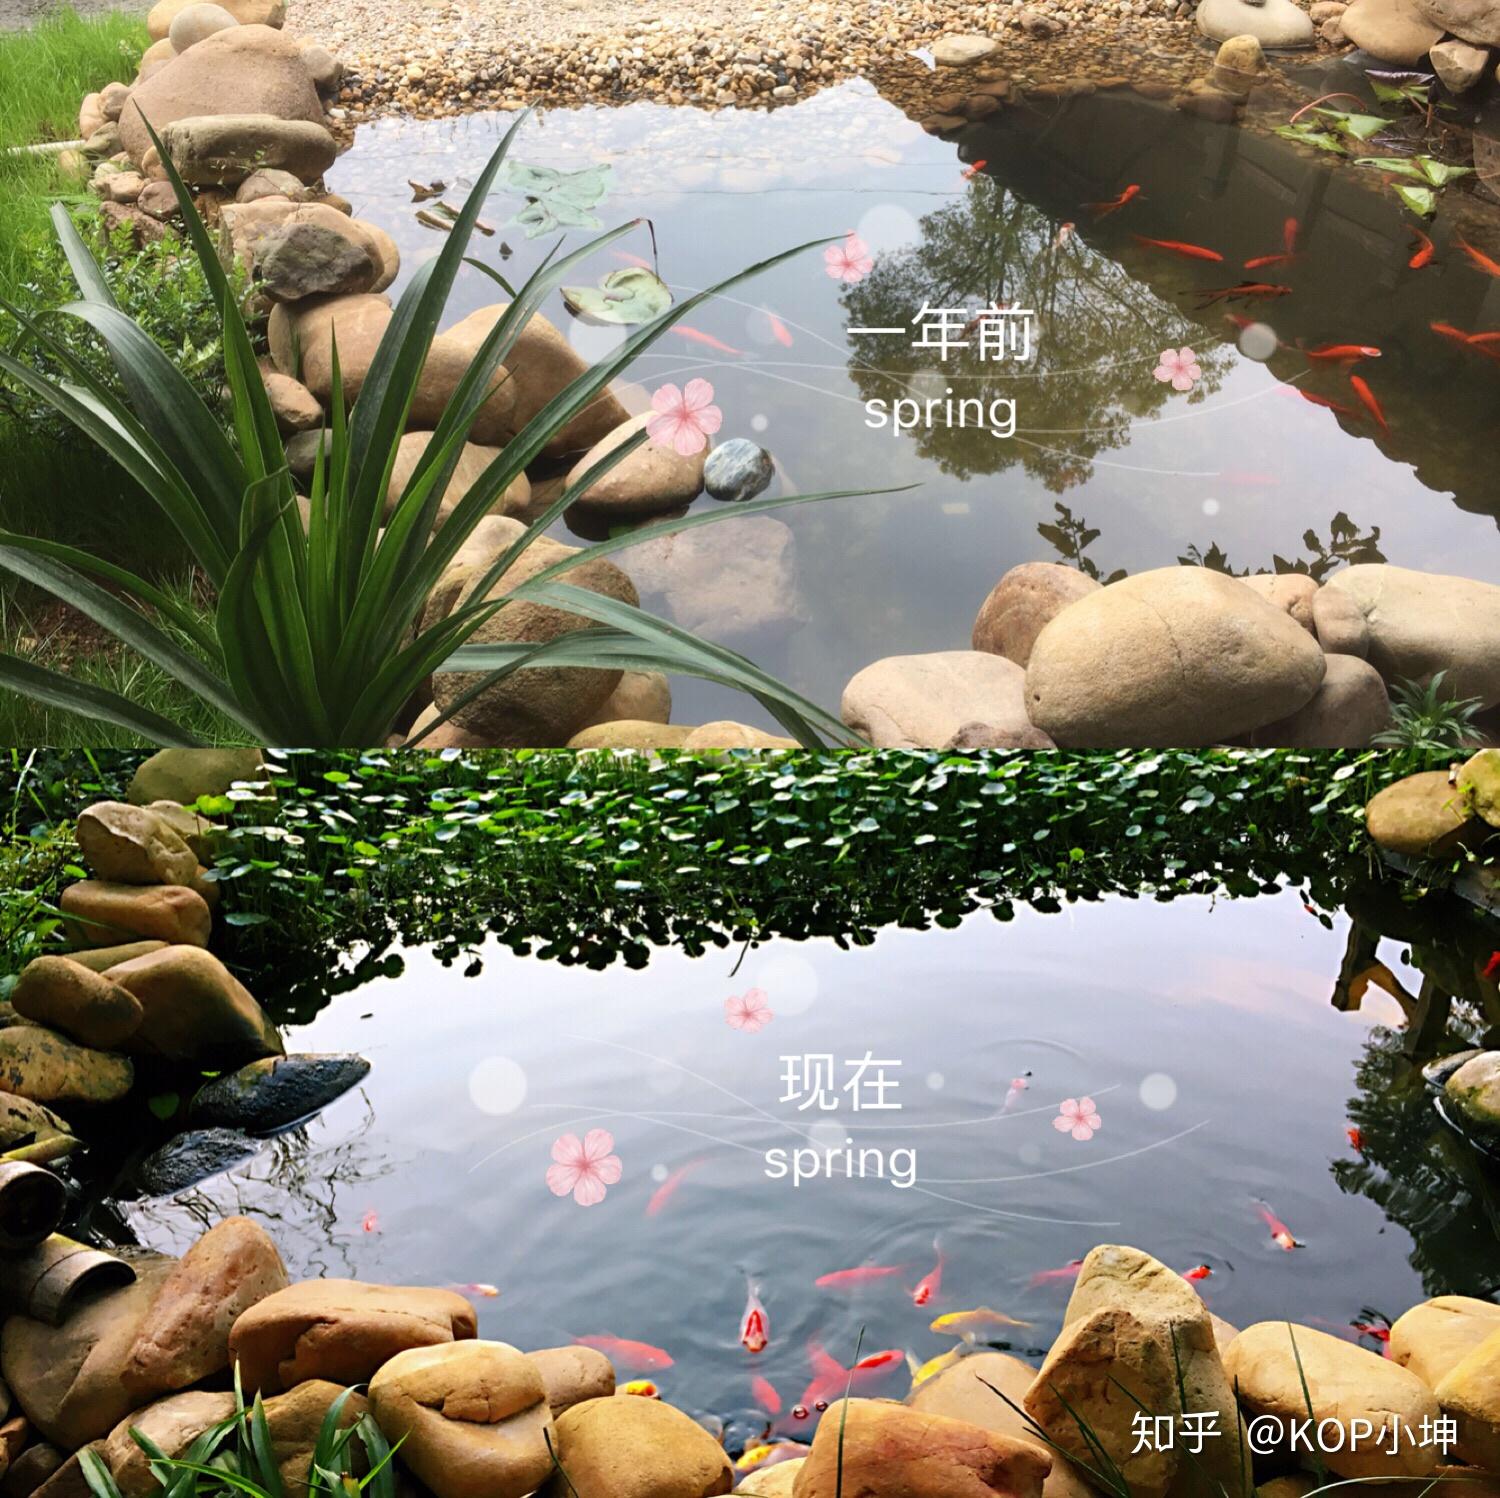 景观鱼池智能高效生态活水系统让养鱼变得简单有趣 ，让池水变得健康洁净。